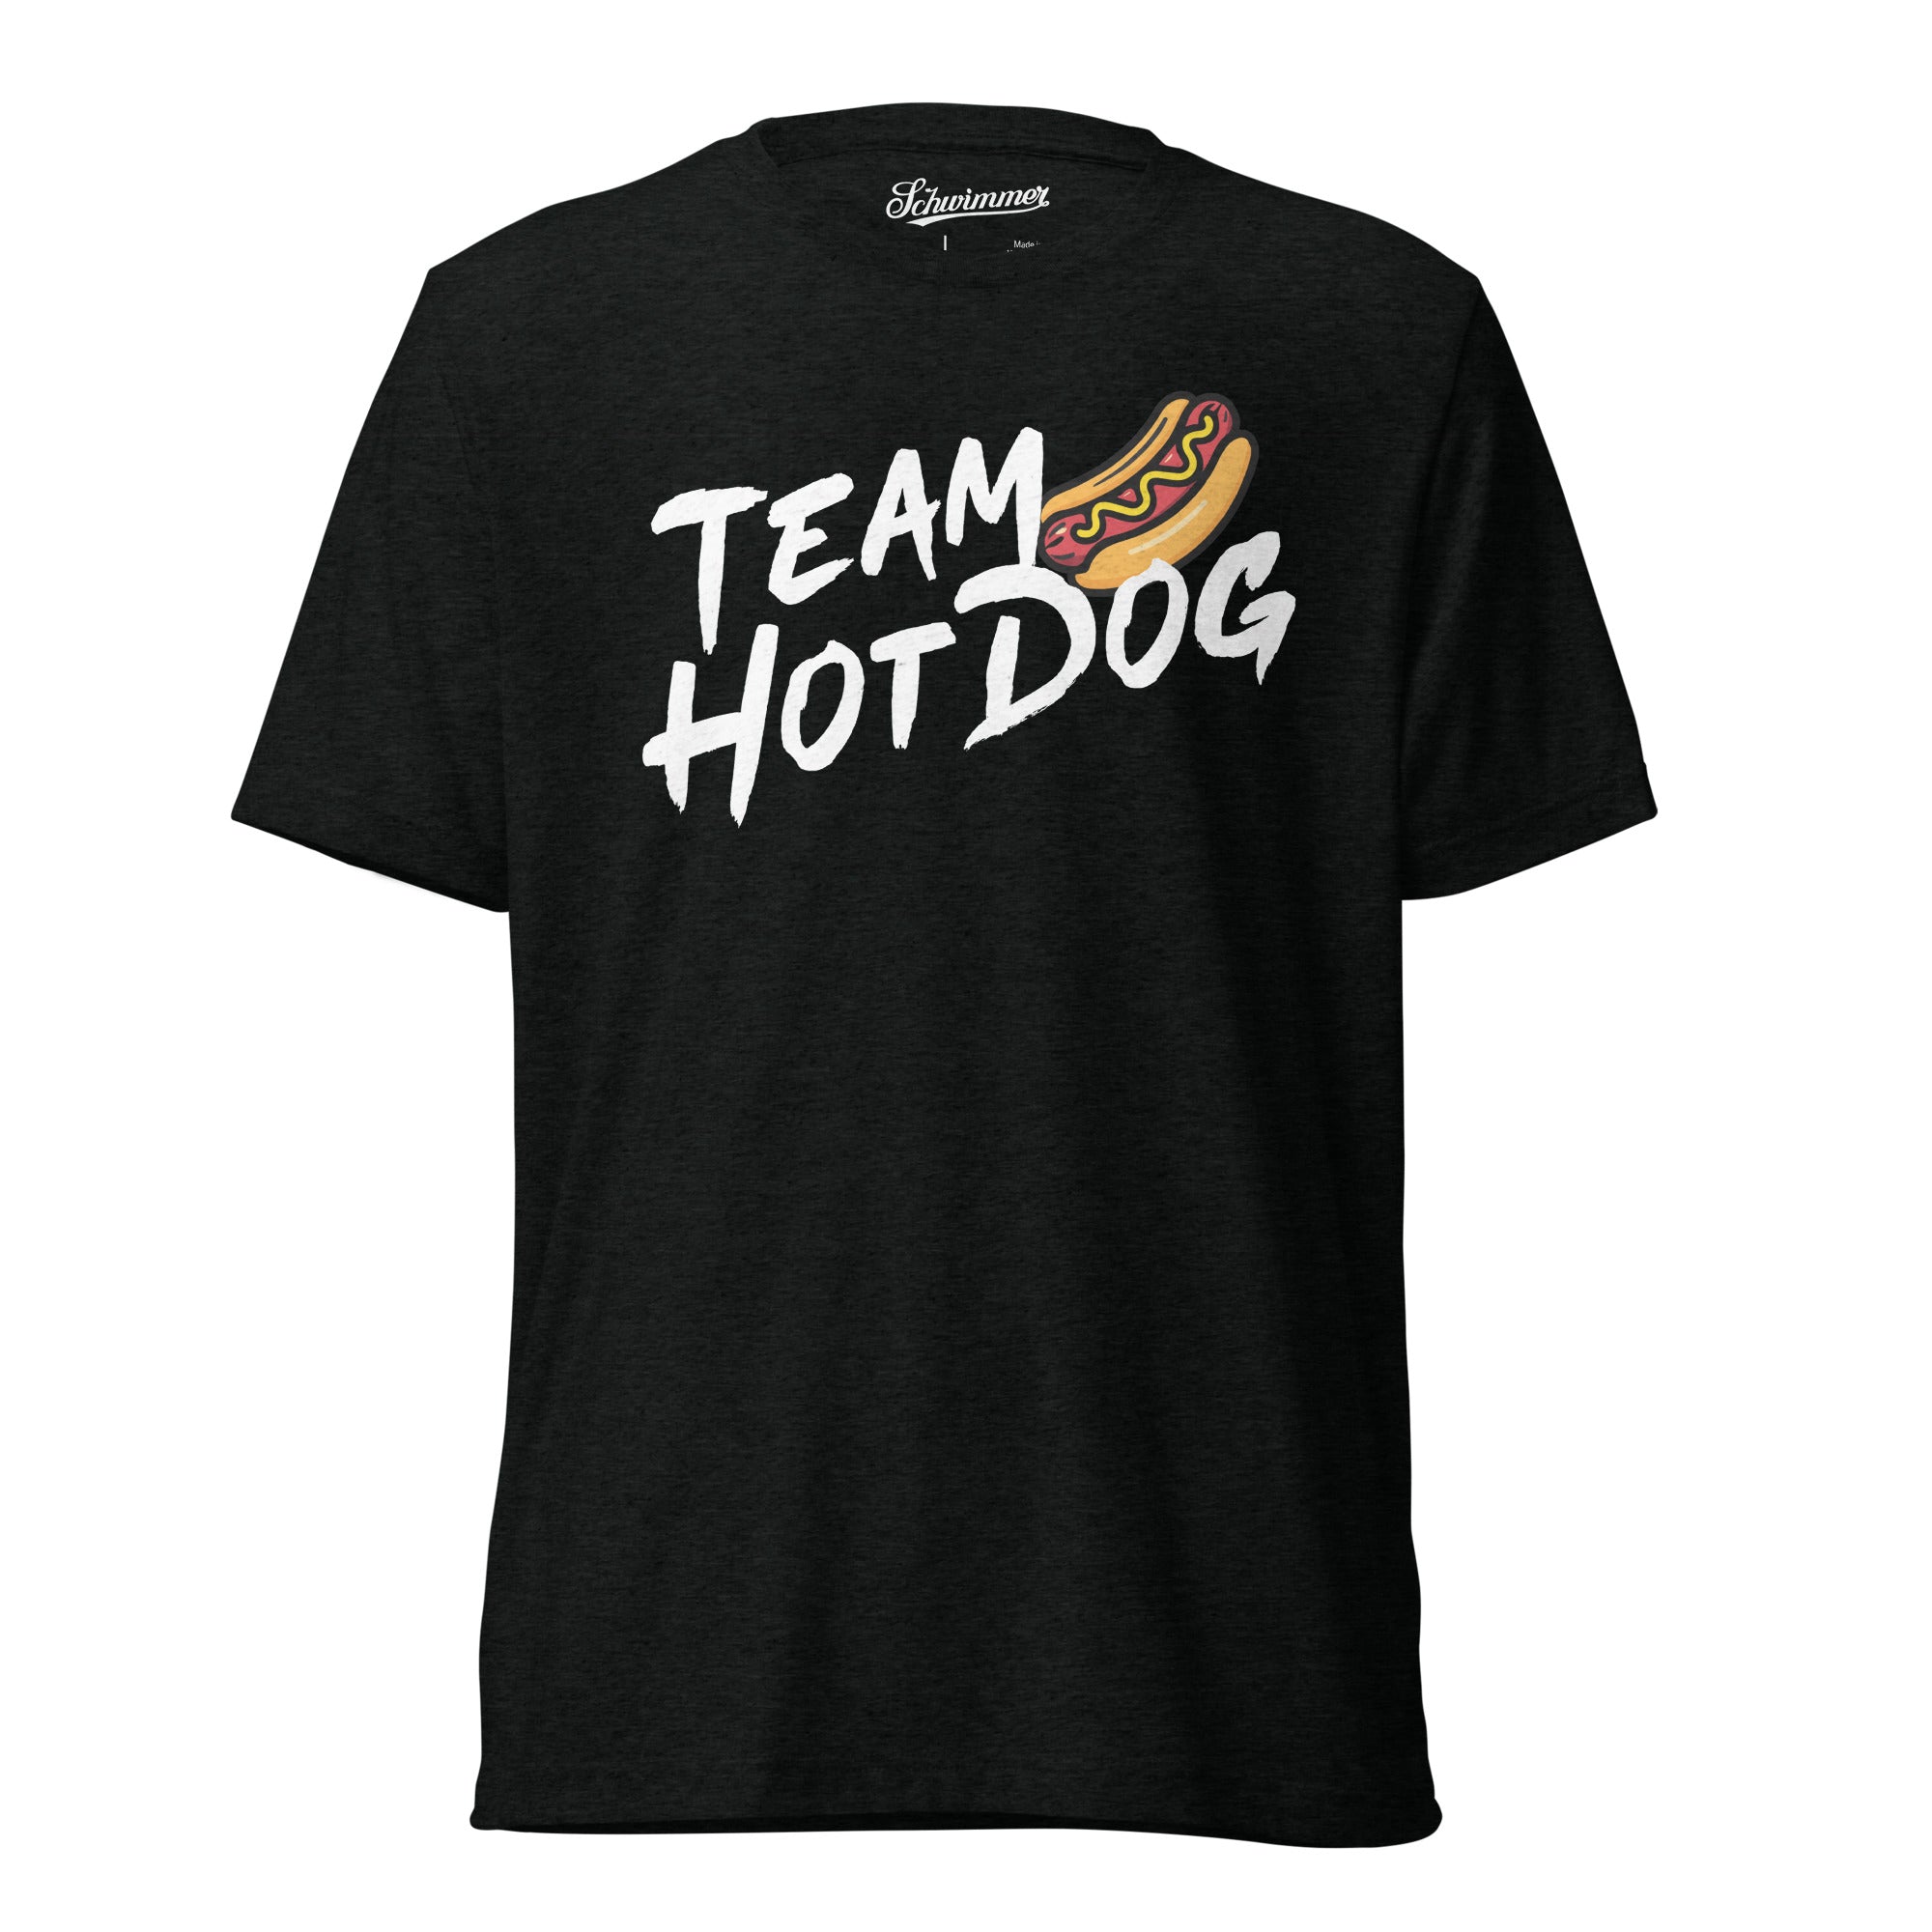 Hot Dog t-shirt